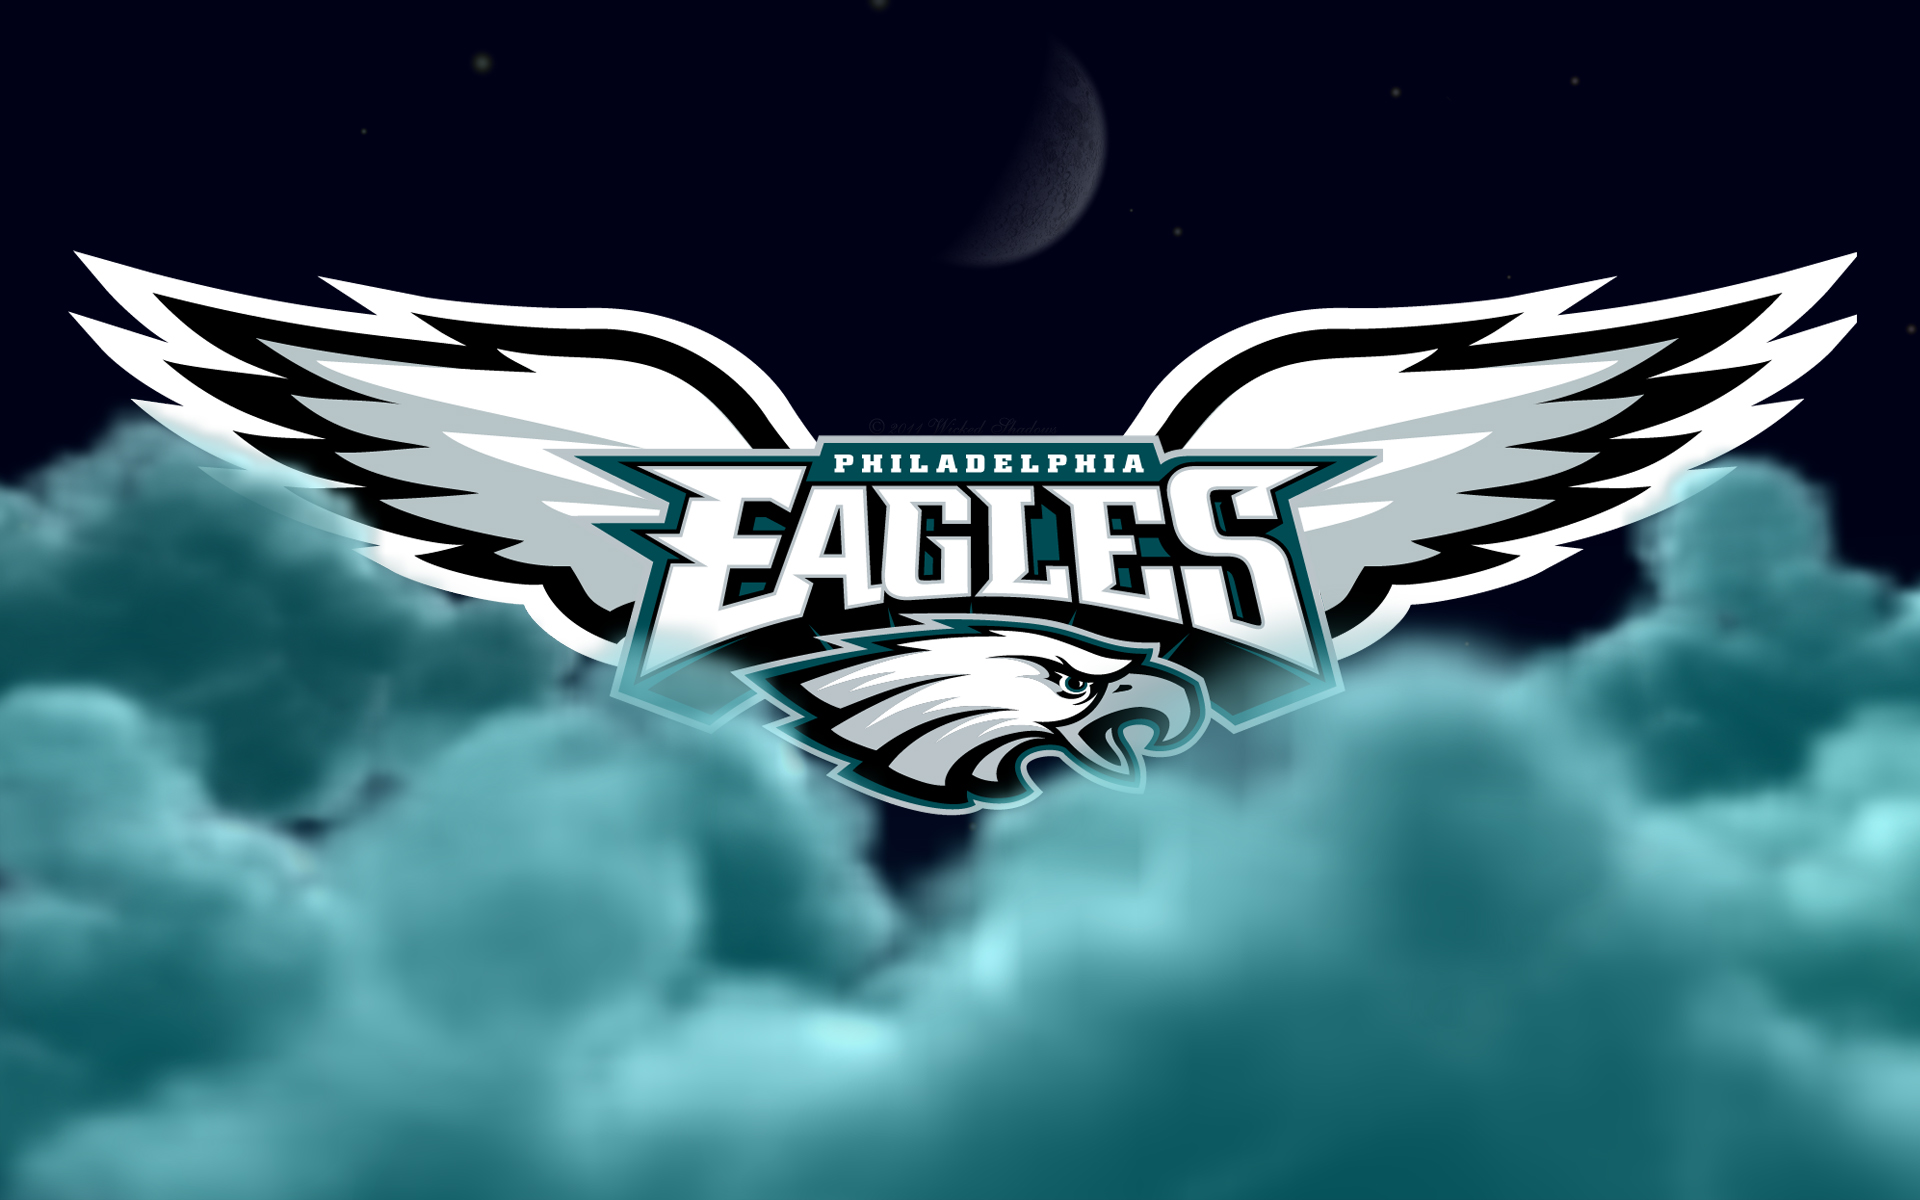 Philadelphia Eagles Flying High Wallpaper - Hot NFL Wallpaper Site